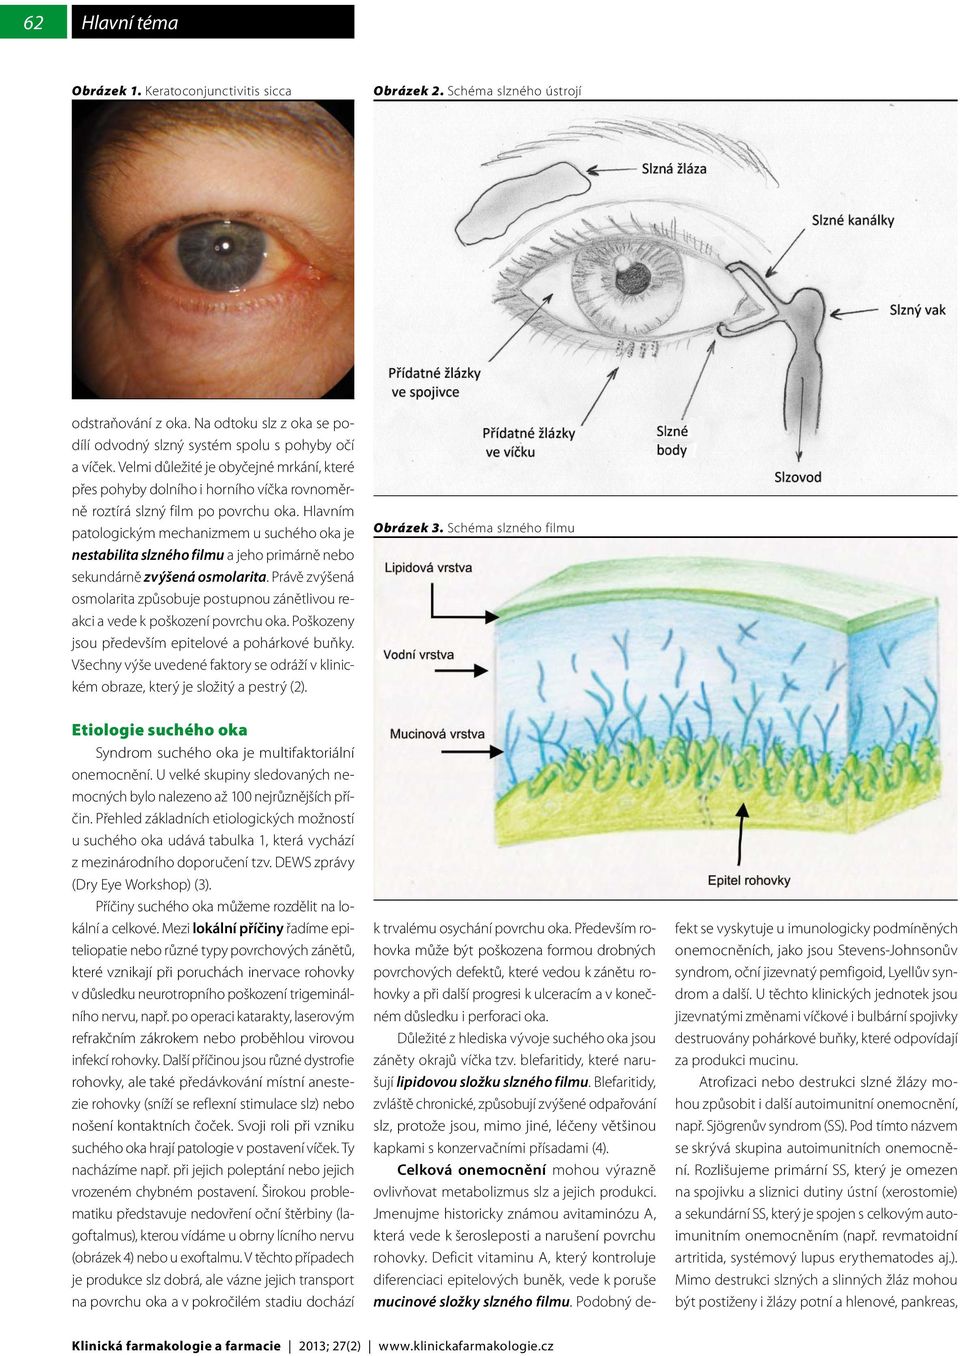 Hlavním patologickým mechanizmem u suchého oka je nestabilita slzného filmu a jeho primárně nebo sekundárně zvýšená osmolarita.